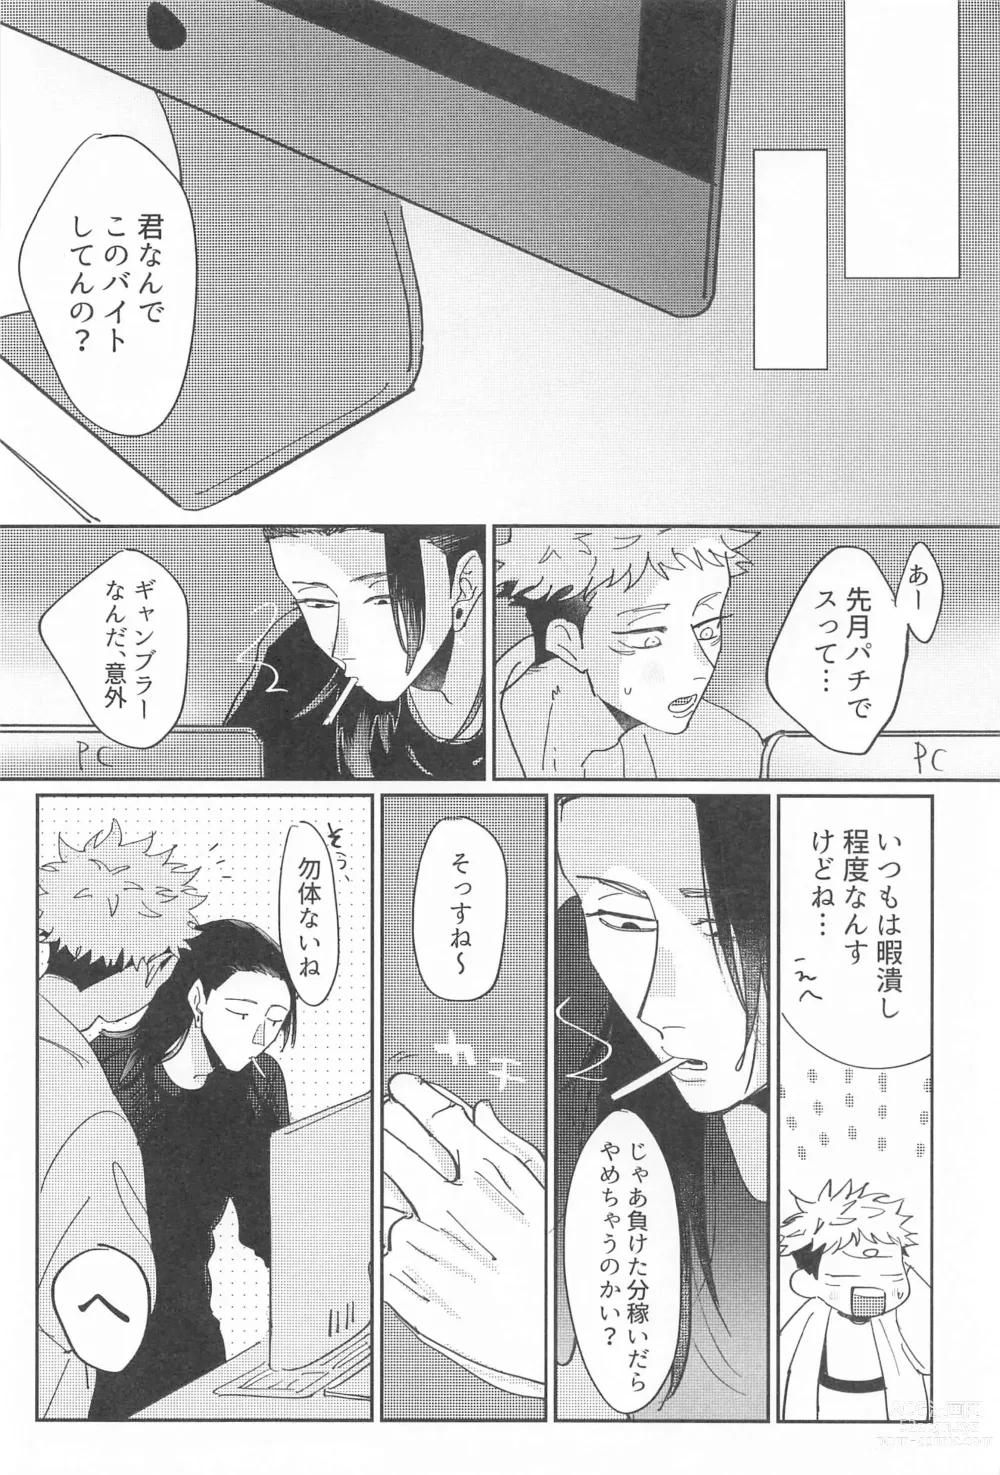 Page 5 of doujinshi Shikakukei no PENTAPRISM